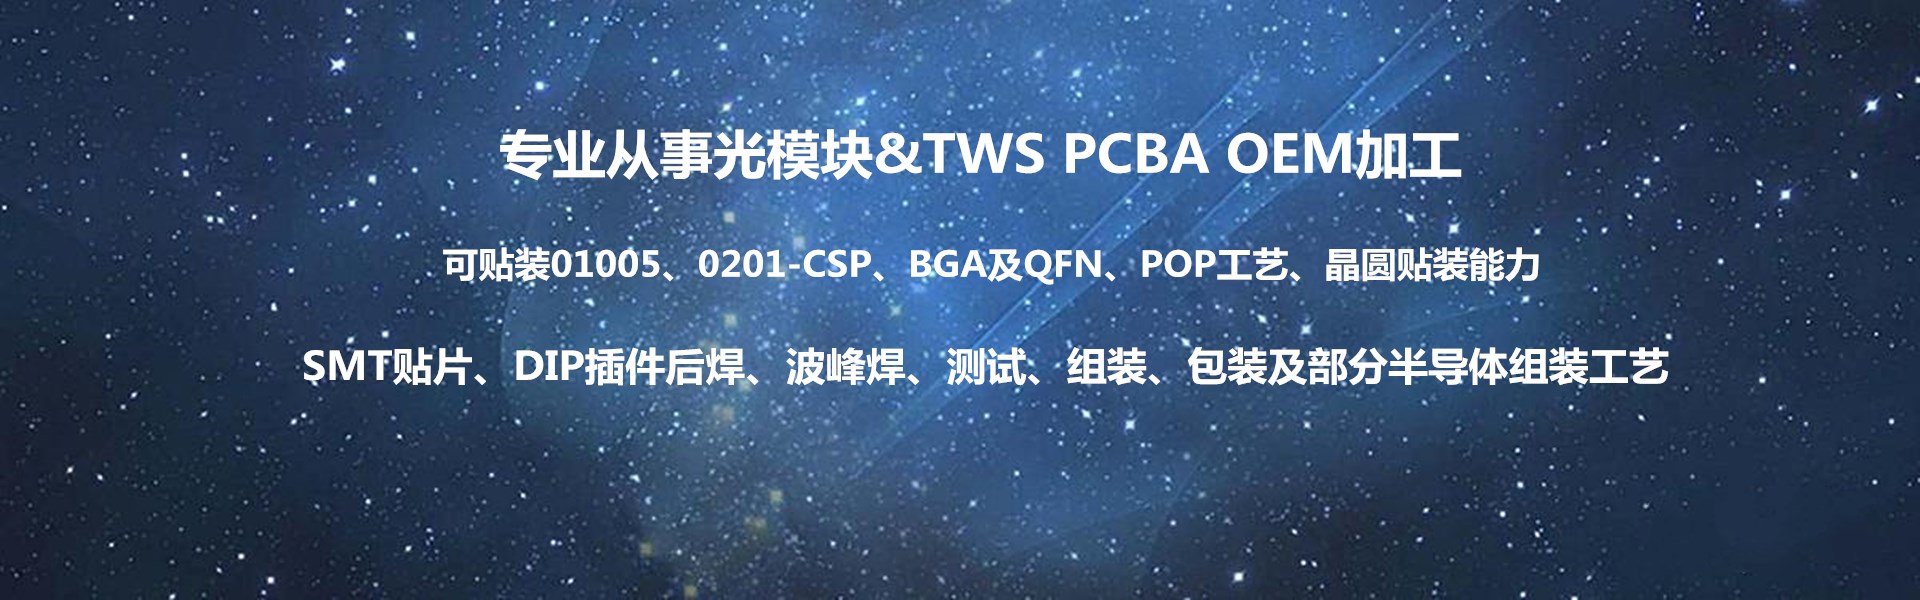 从事光模块TWS PCBA加工